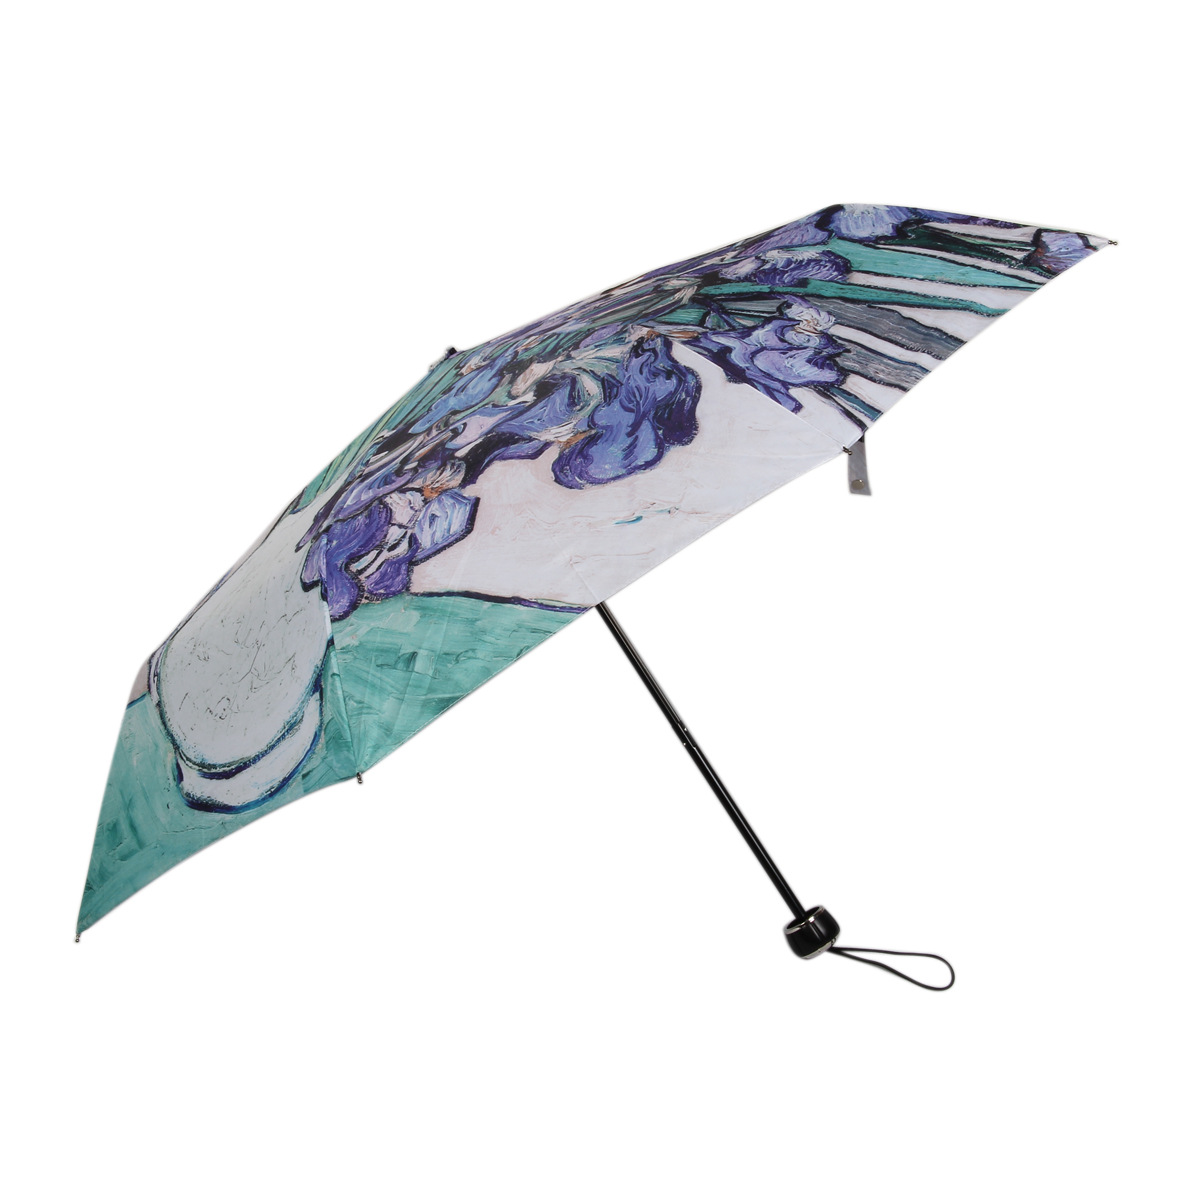 正品[油画雨伞]深圳雨伞厂家评测 雨伞的英文图